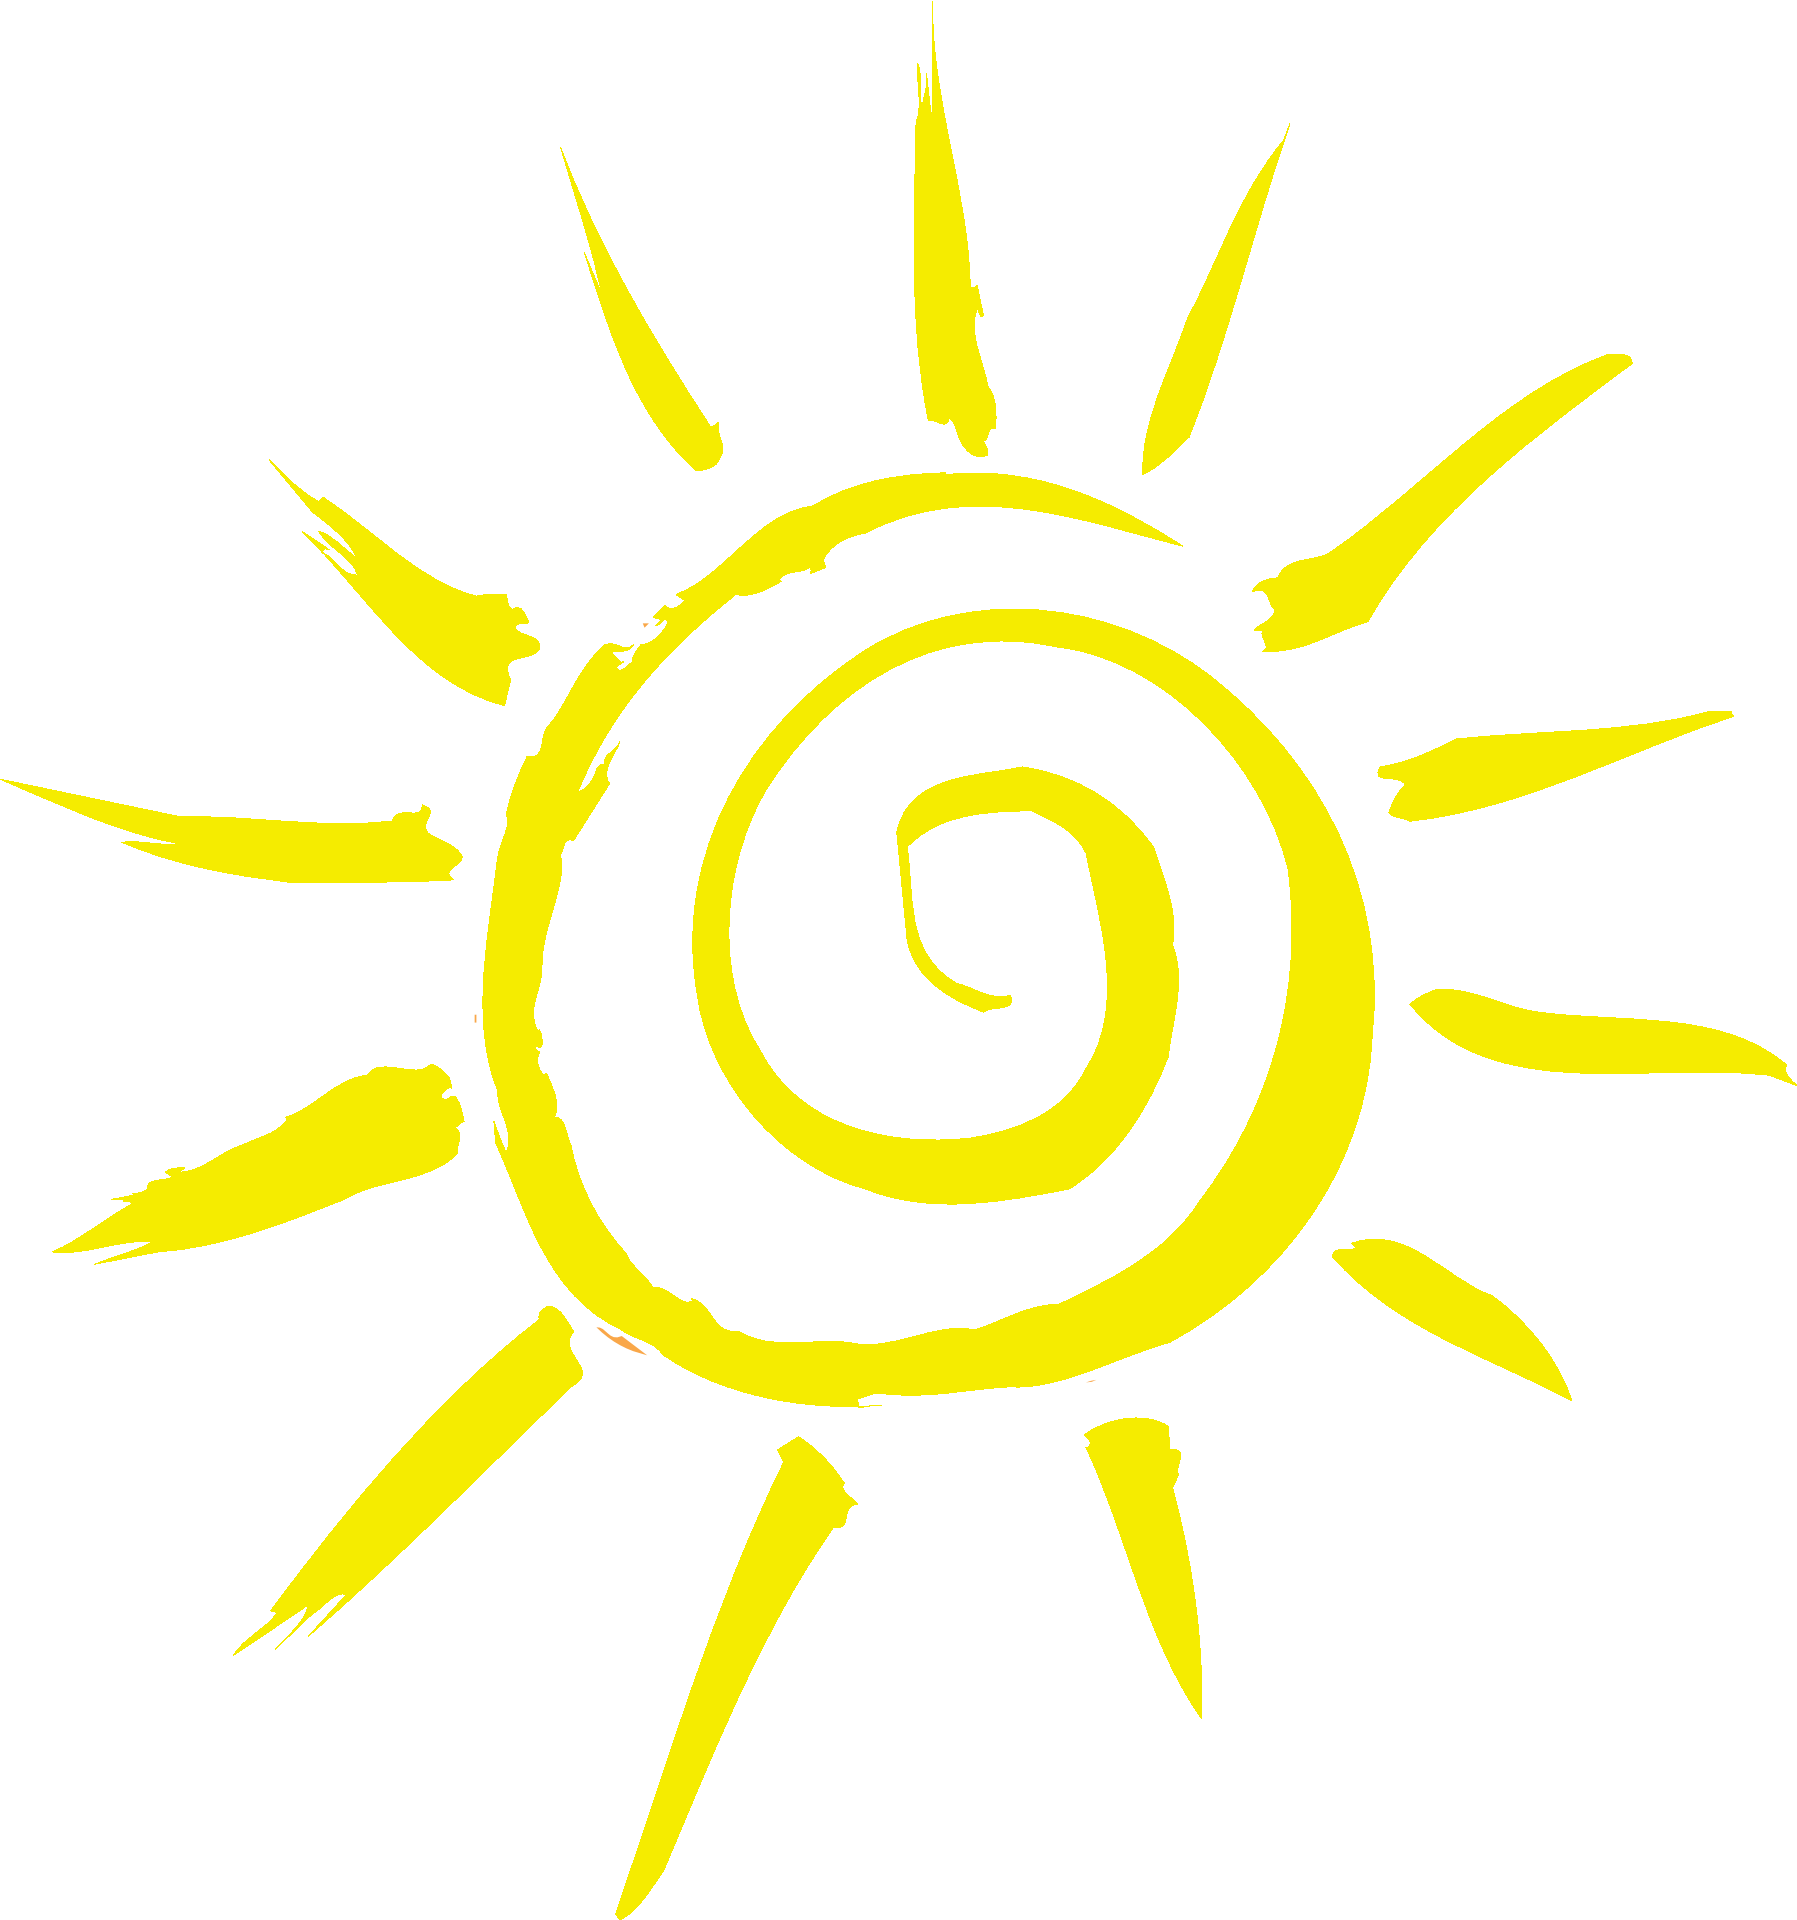 Sun sunshine wellbeing logo